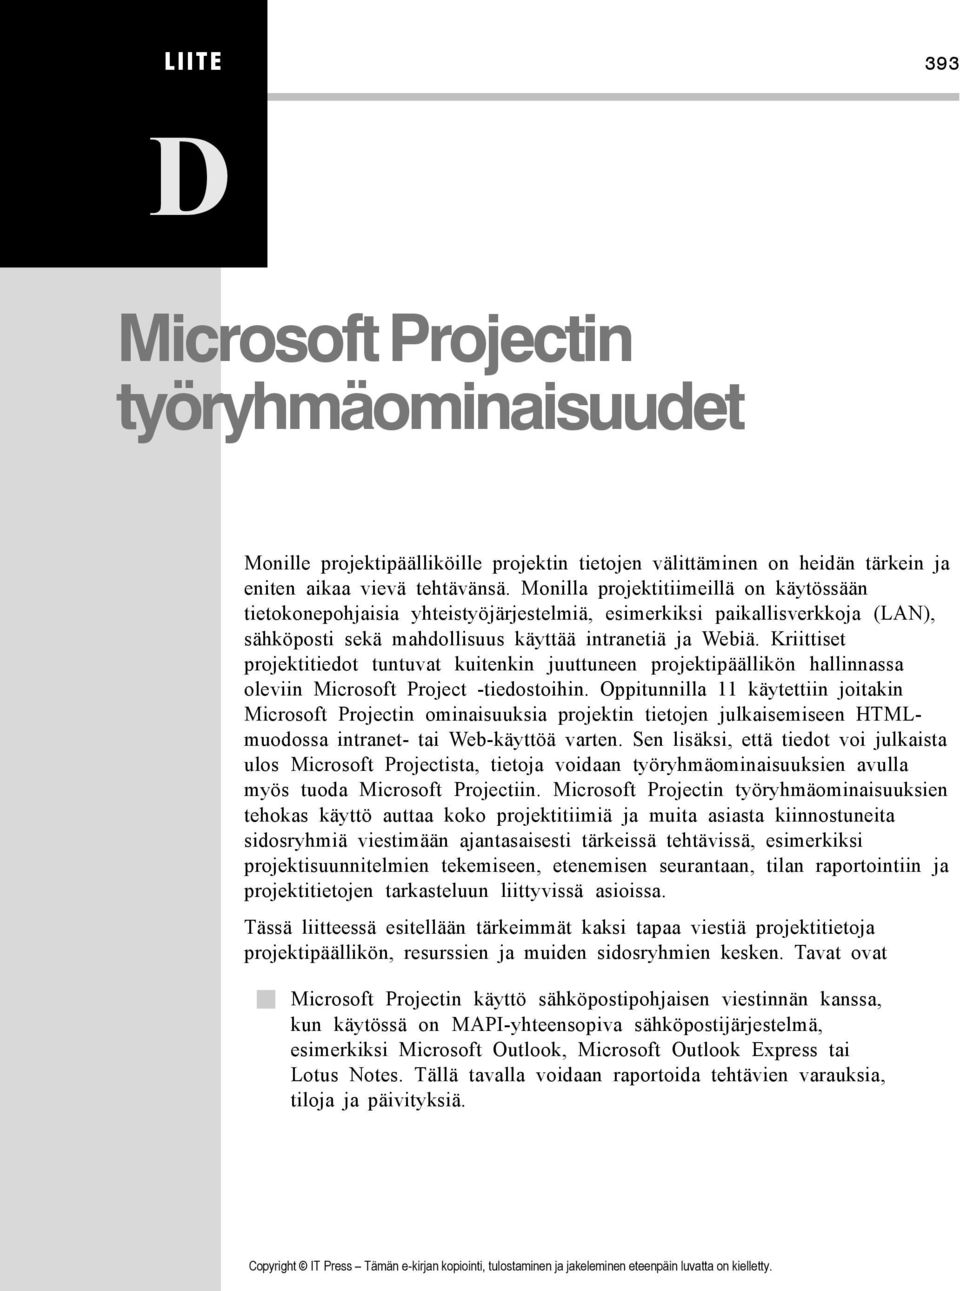 Kriittiset projektitiedot tuntuvat kuitenkin juuttuneen projektipäällikön hallinnassa oleviin Microsoft Project -tiedostoihin.